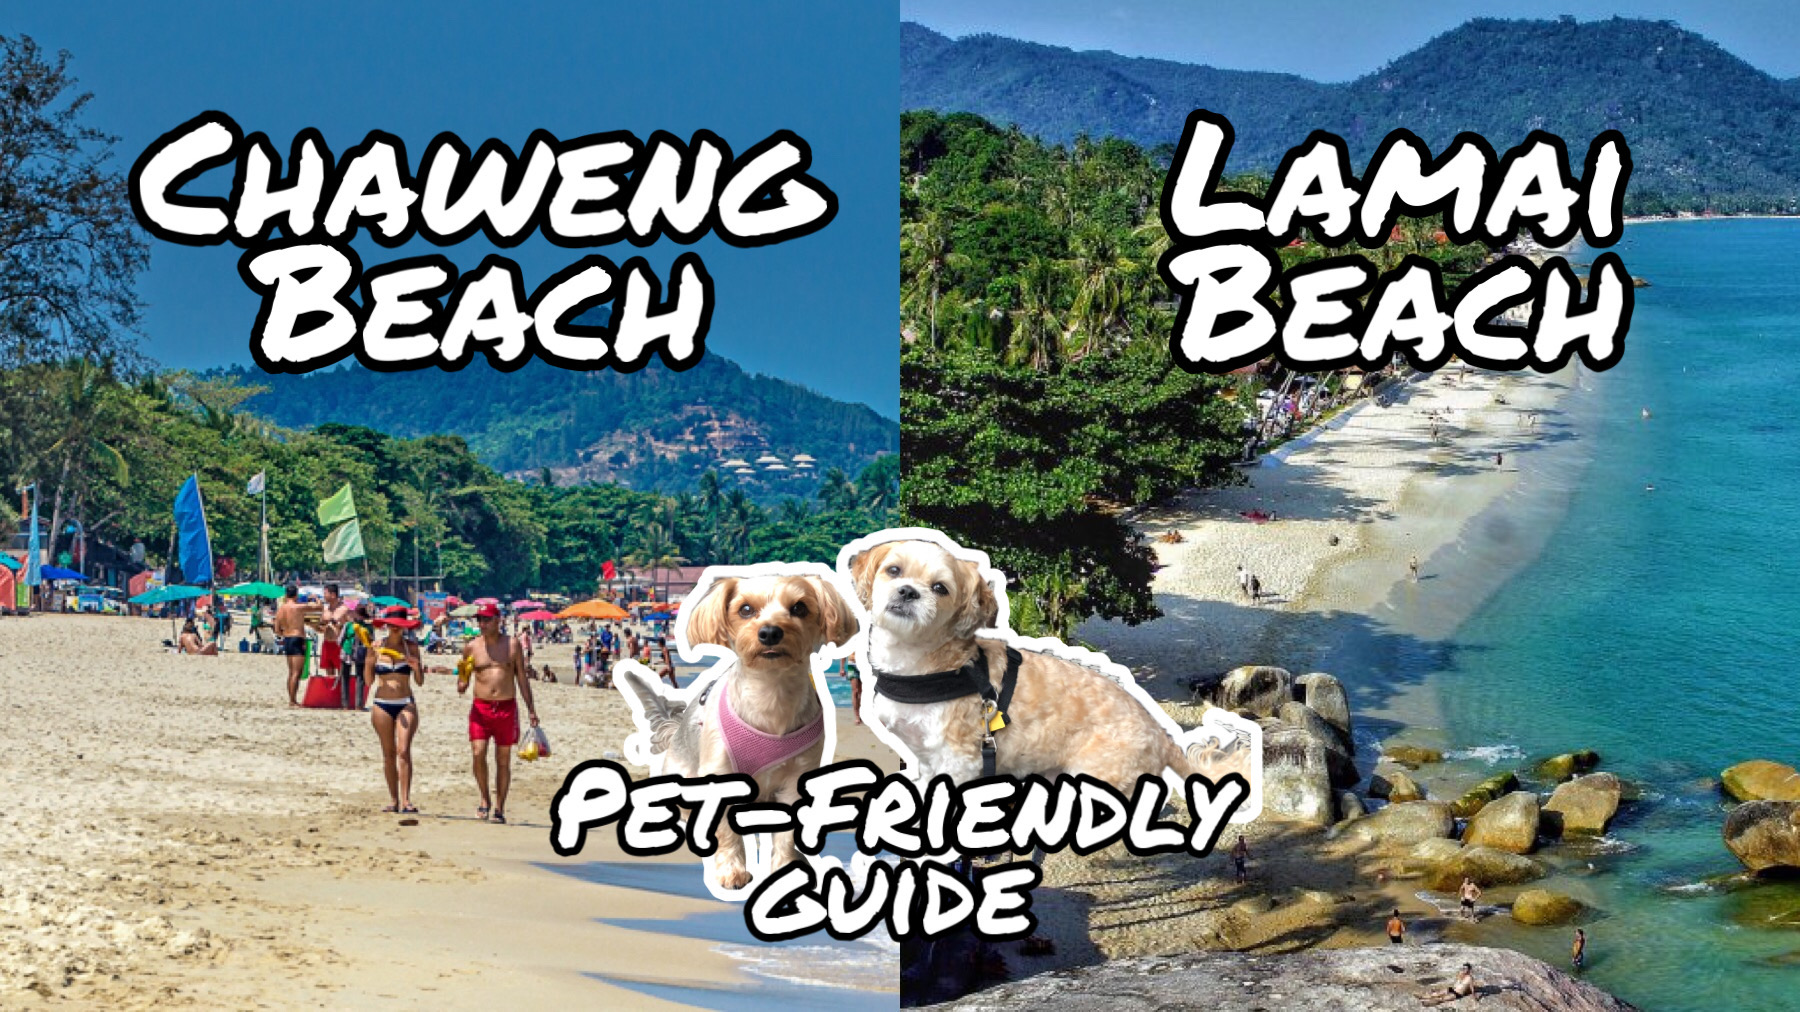 Lamai Beach vs Chaweng Beach